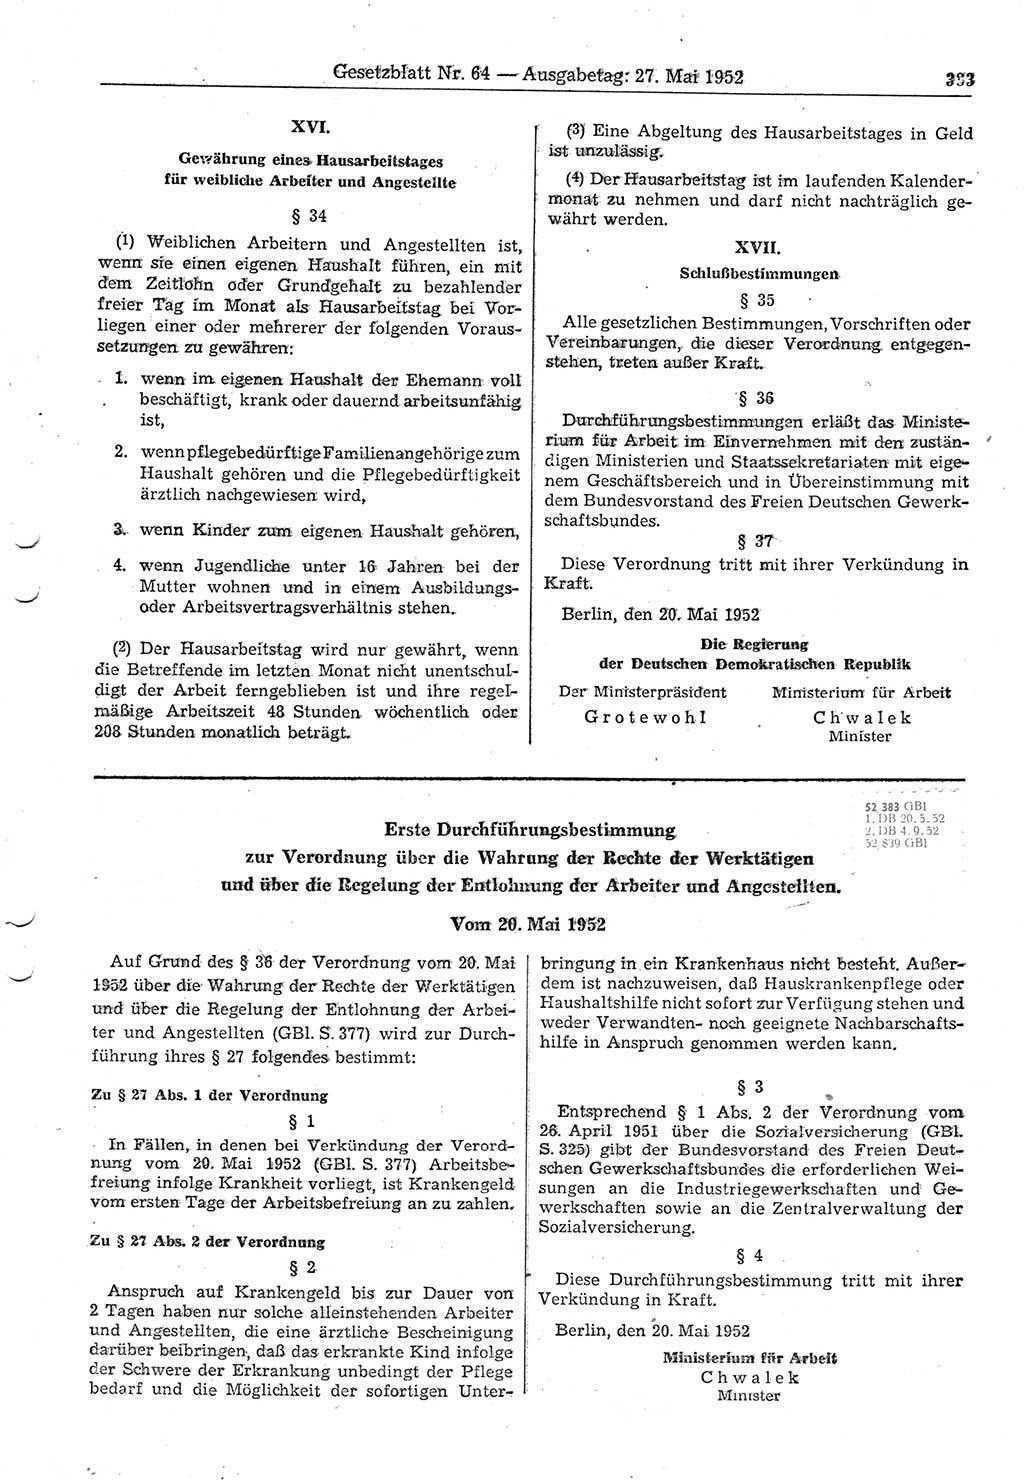 Gesetzblatt (GBl.) der Deutschen Demokratischen Republik (DDR) 1952, Seite 383 (GBl. DDR 1952, S. 383)